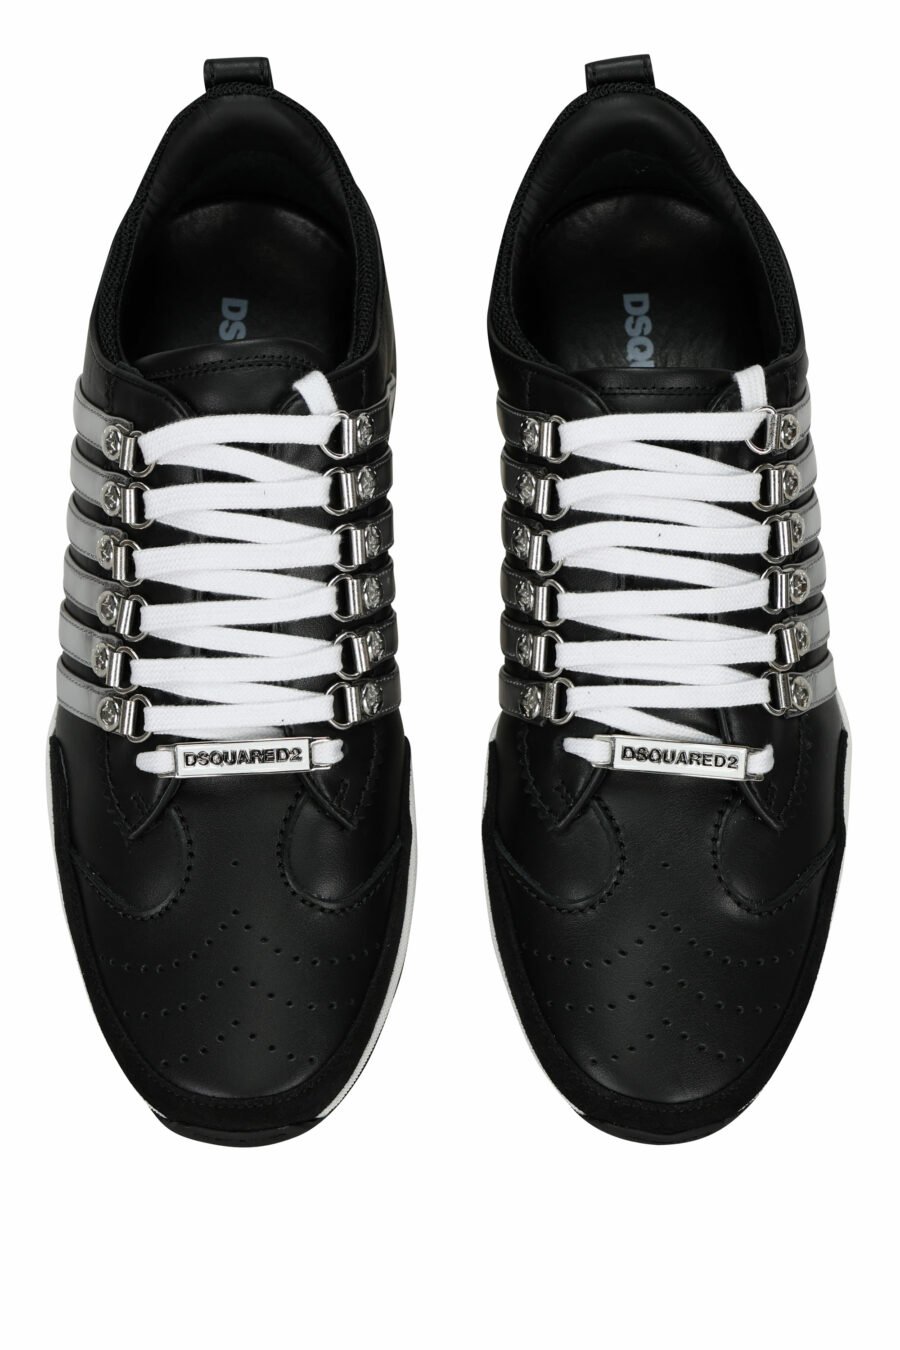 Zapatillas negras con lineas plateadas y suela bicolor - 8055777301289 4